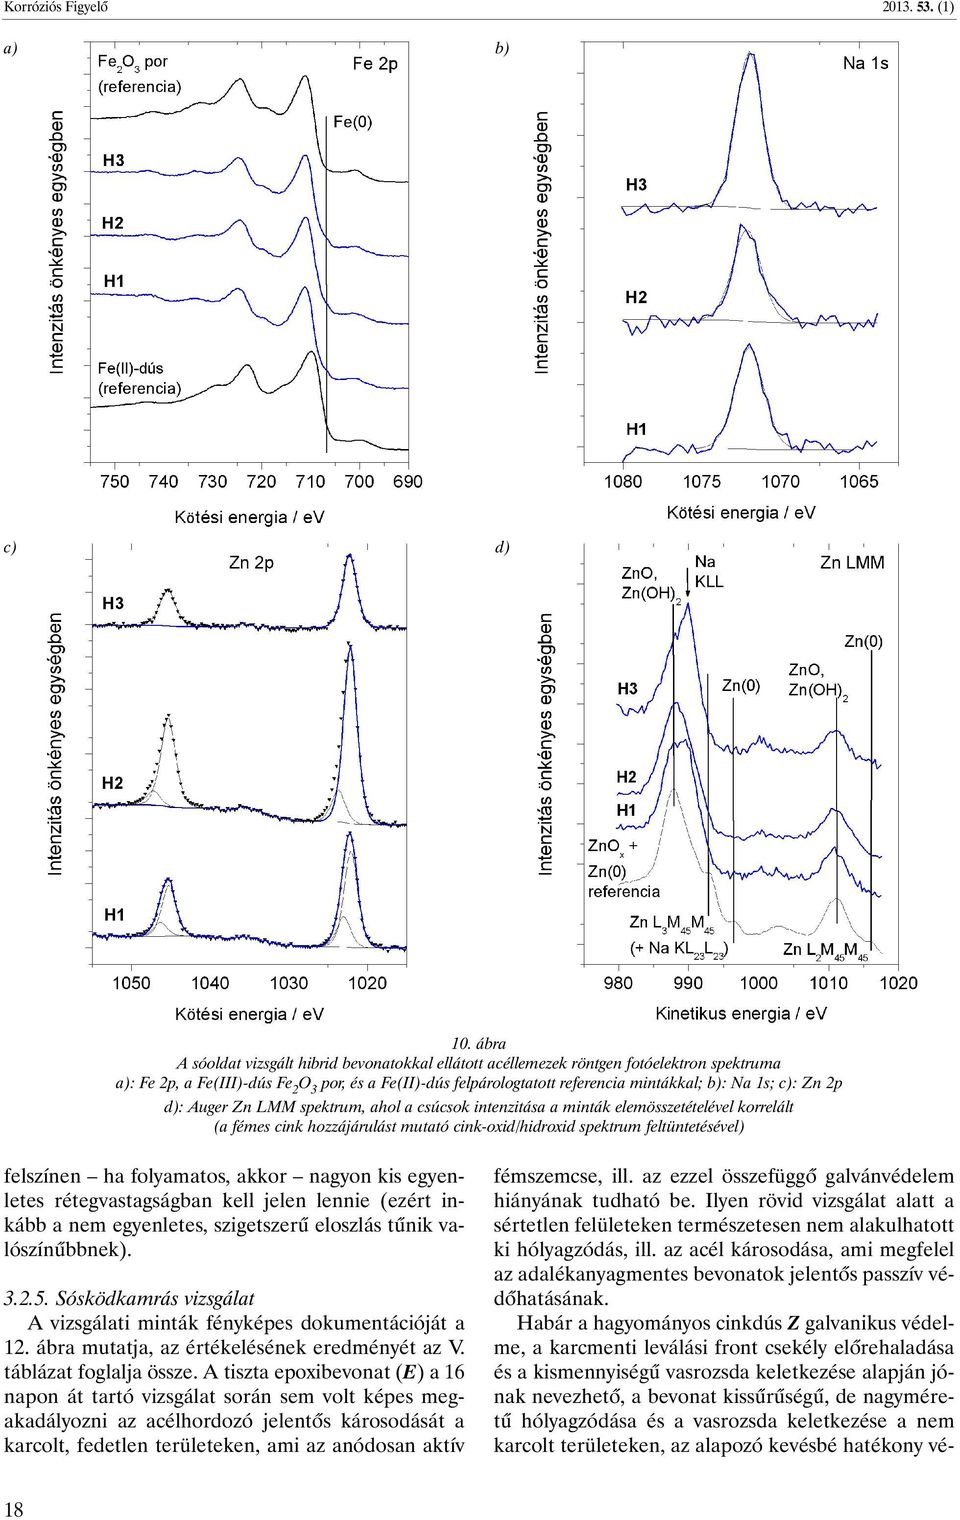 1s; c): Zn 2p d): Auger Zn LMM spektrum, ahol a csúcsok intenzitása a minták elemösszetételével korrelált (a fémes cink hozzájárulást mutató cink-oxid/hidroxid spektrum feltüntetésével) felszínen ha